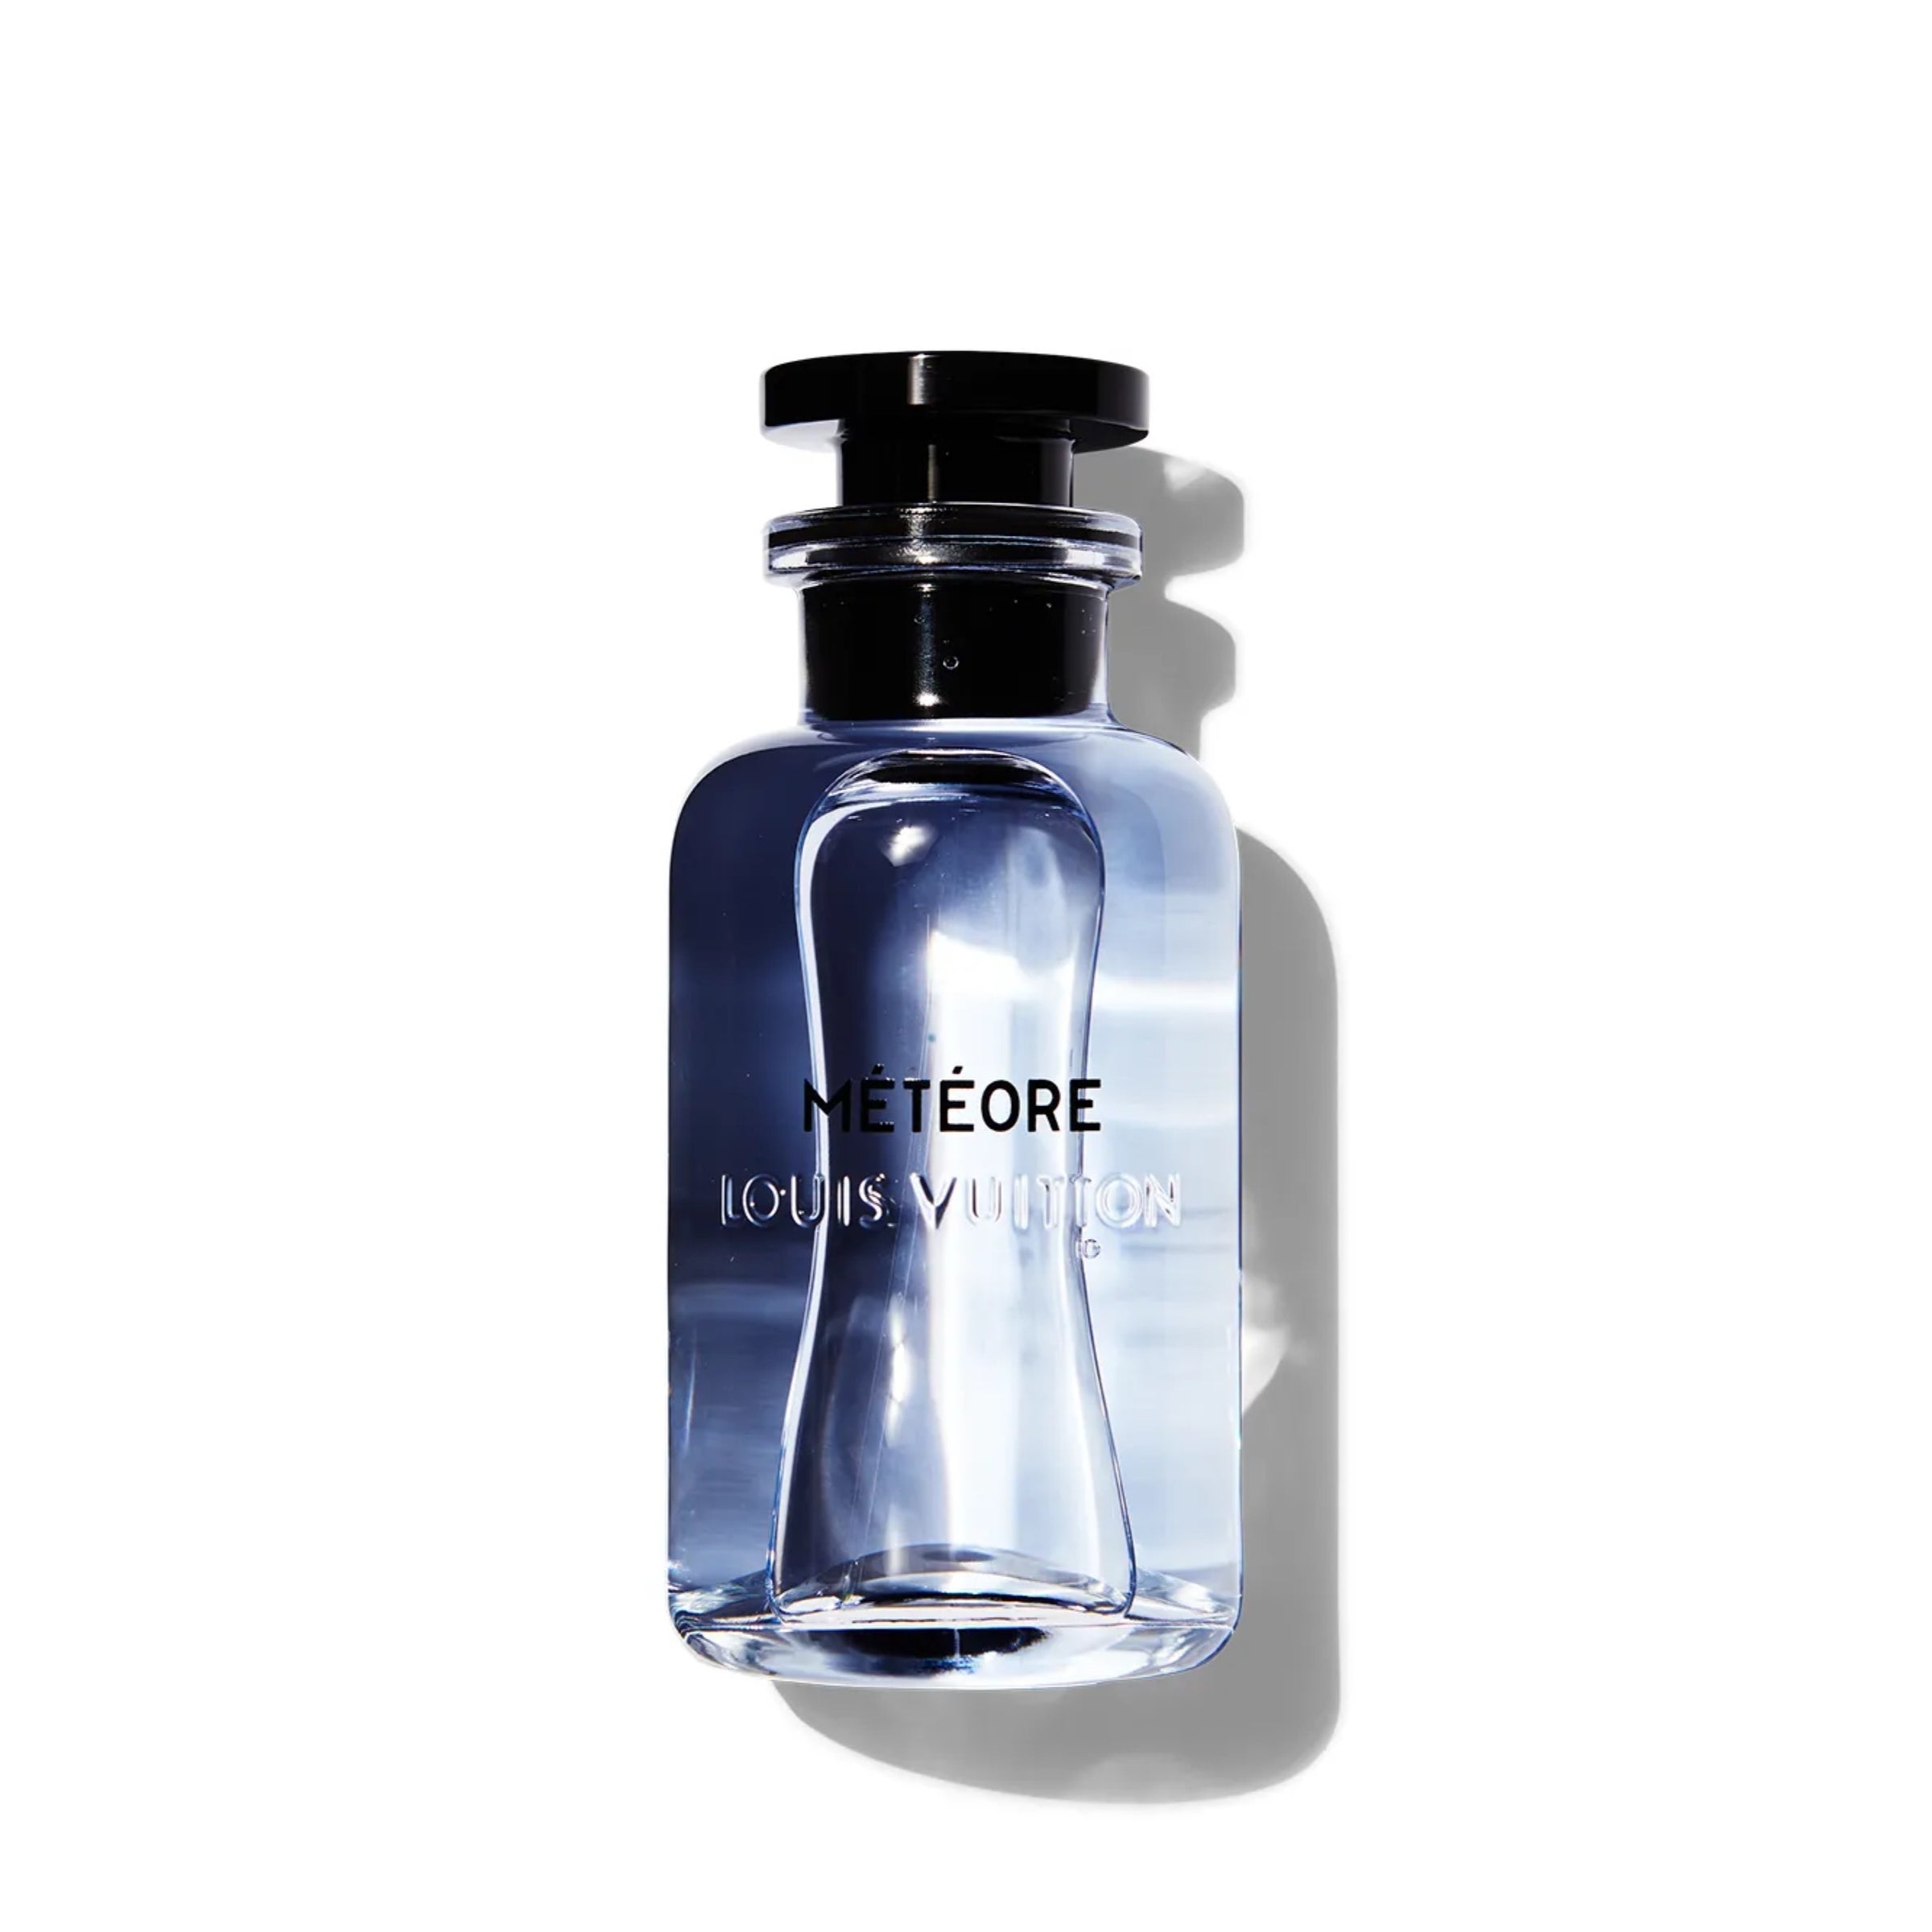 Louis Vuitton Meteore Eau De Parfum | Chase Scents Oils